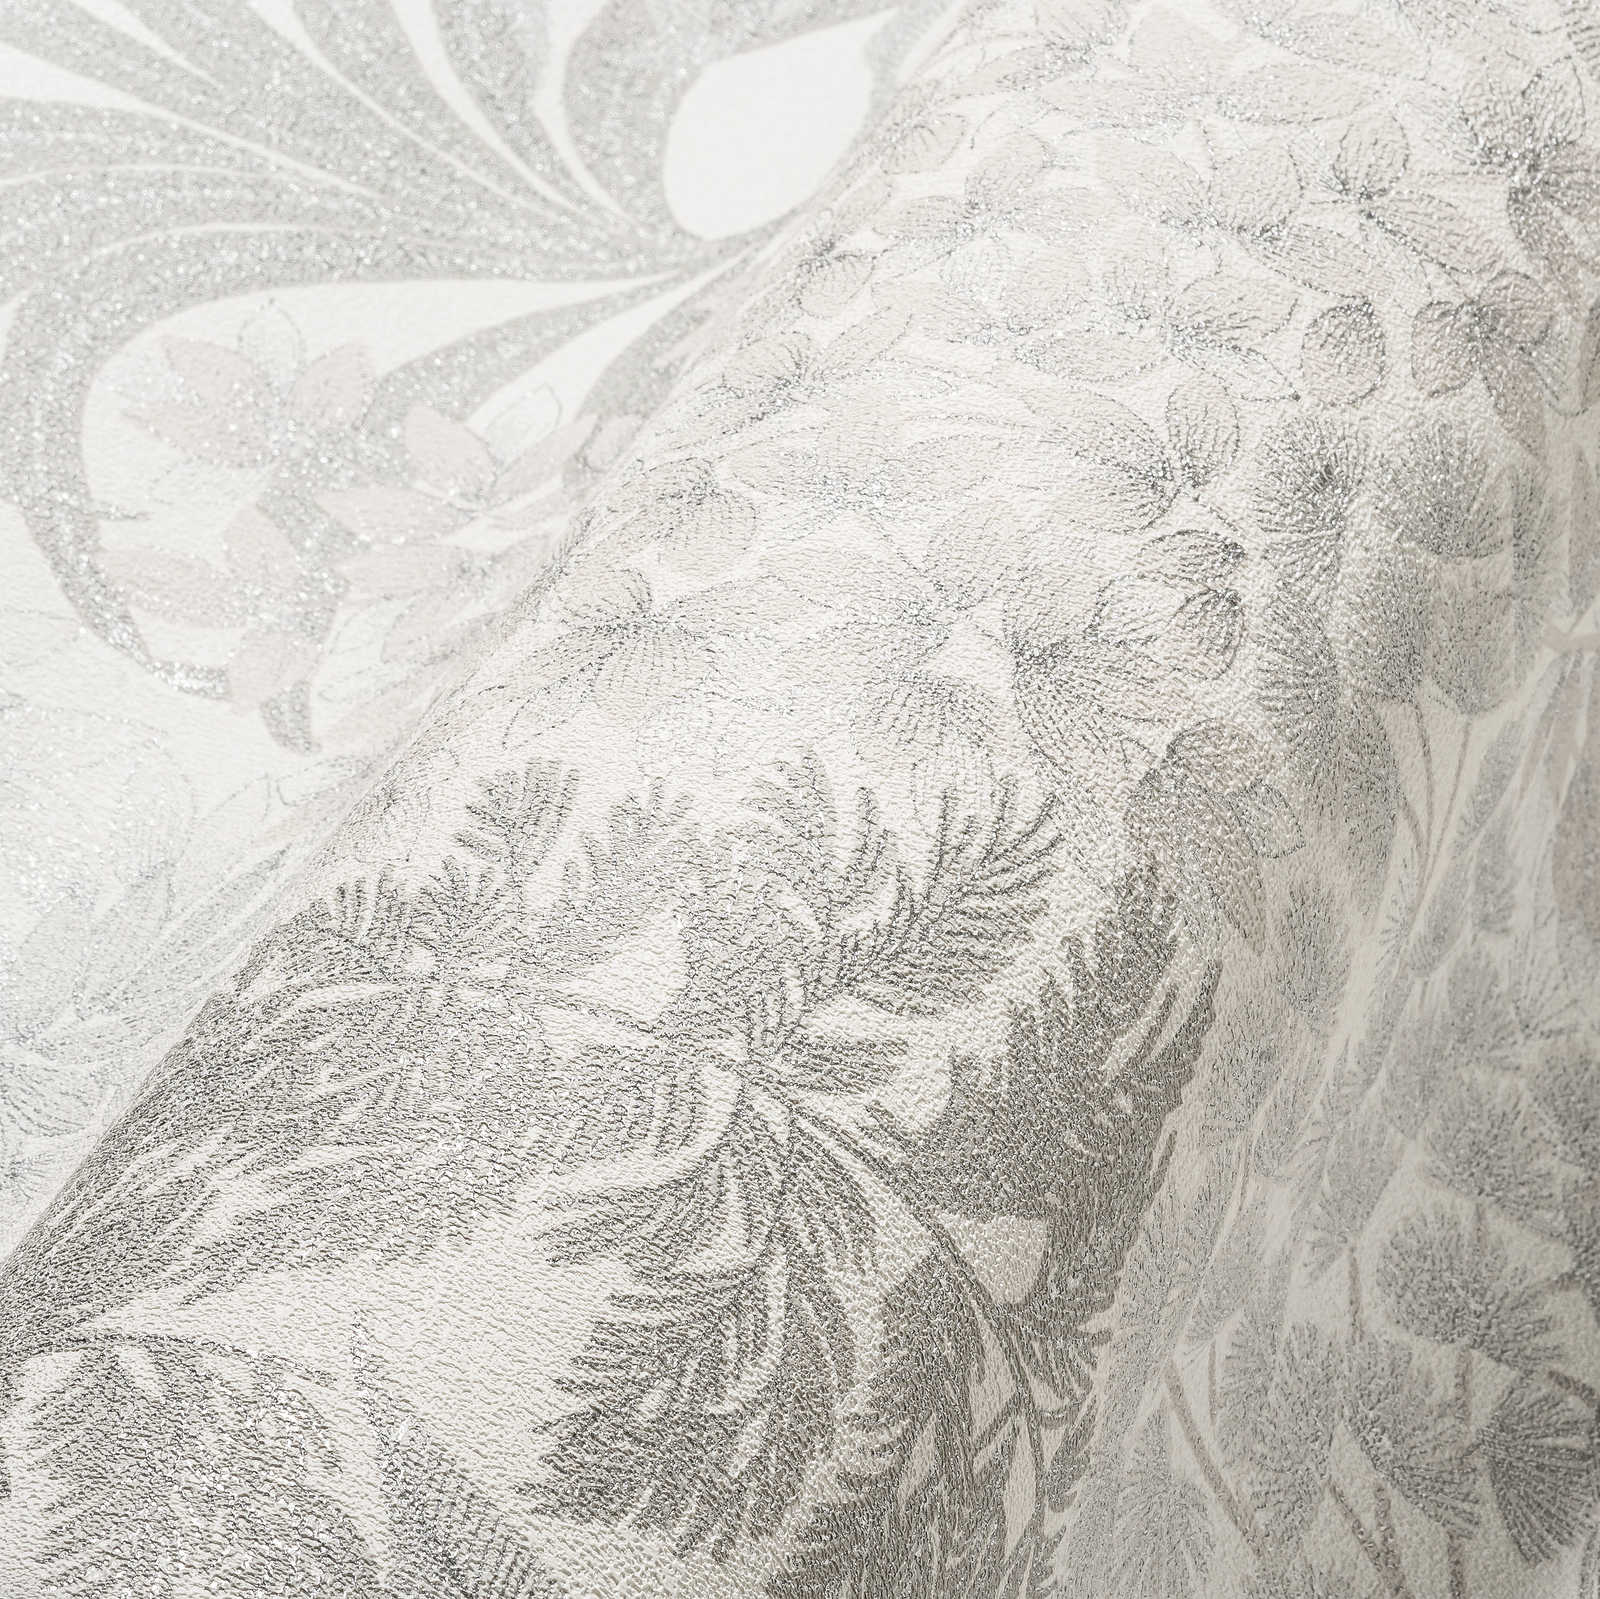             Leicht glänzende Blumentapete in dezenter Farbe – Weiß, Grau, Silber
        